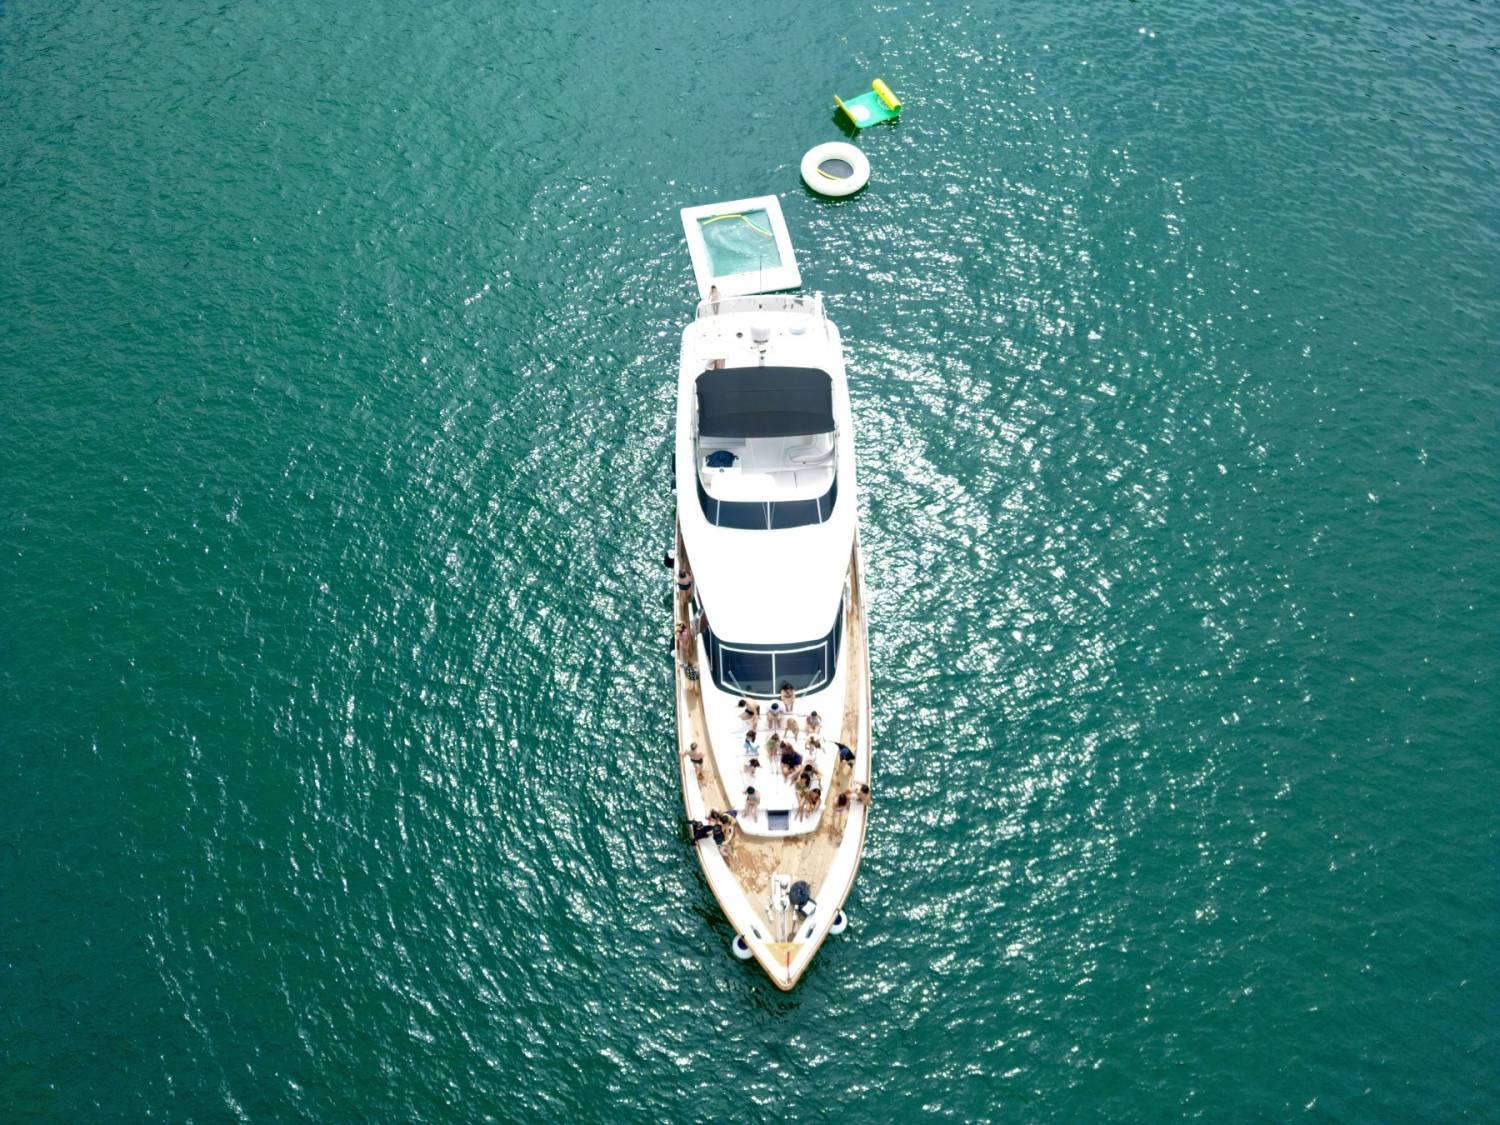 SL05 豪華西式遊艇全包王牌套餐 (送水上玩具 + 精美到會 + WAKESURF抽獎 5